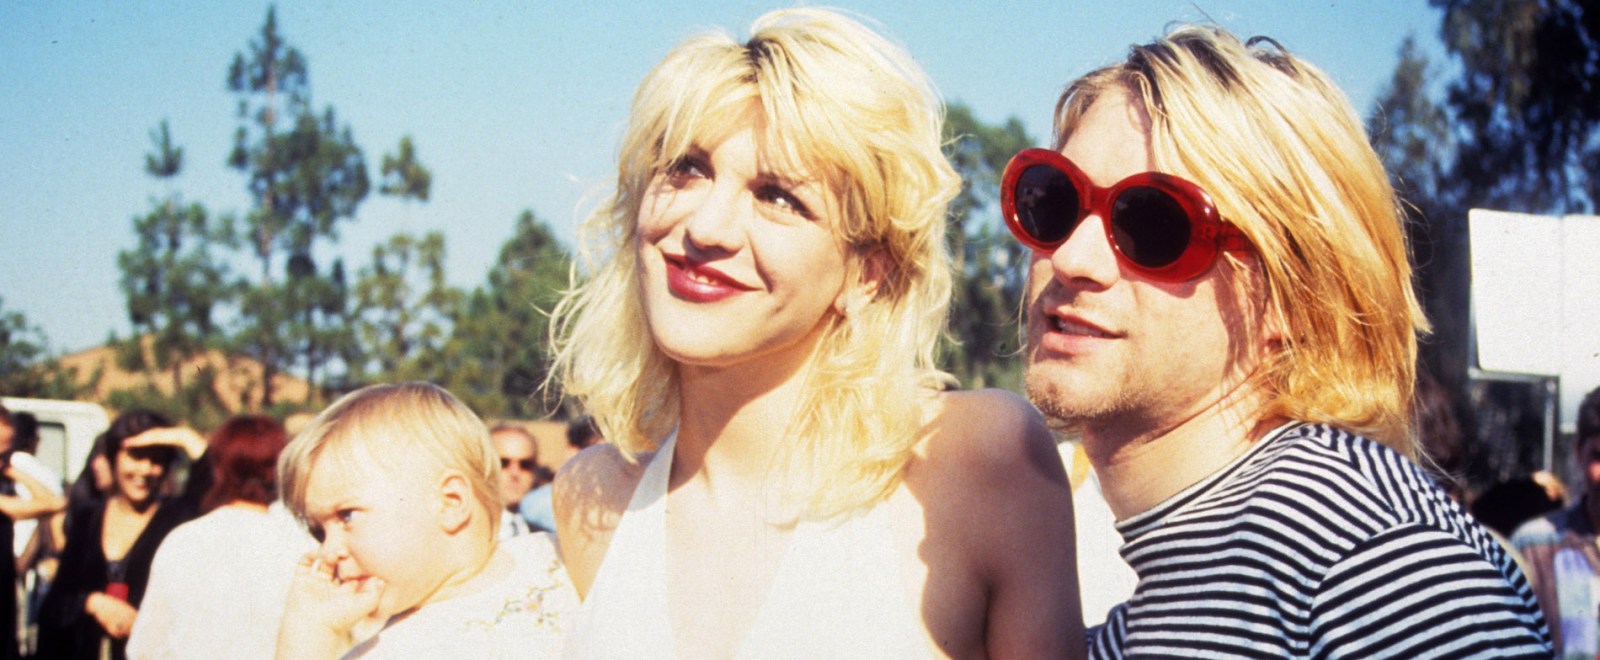 Courtney Love Kurt Cobain 1993